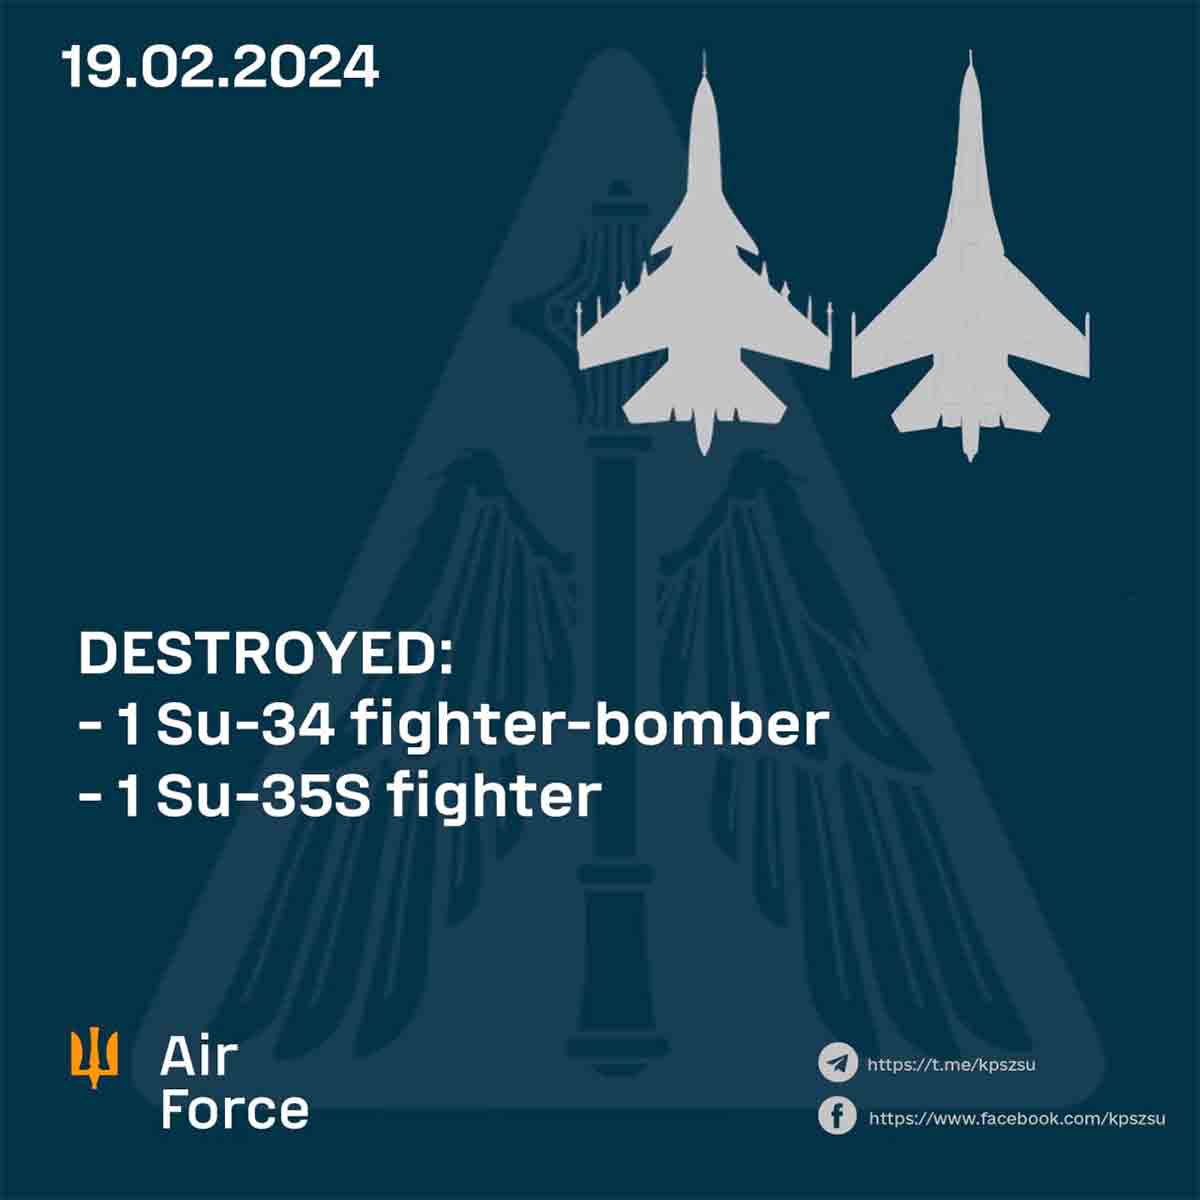 la force aérienne ukrainienne annonce la destruction de 2 autres avions de chasse russes, portant le total à 6 avions en trois jours